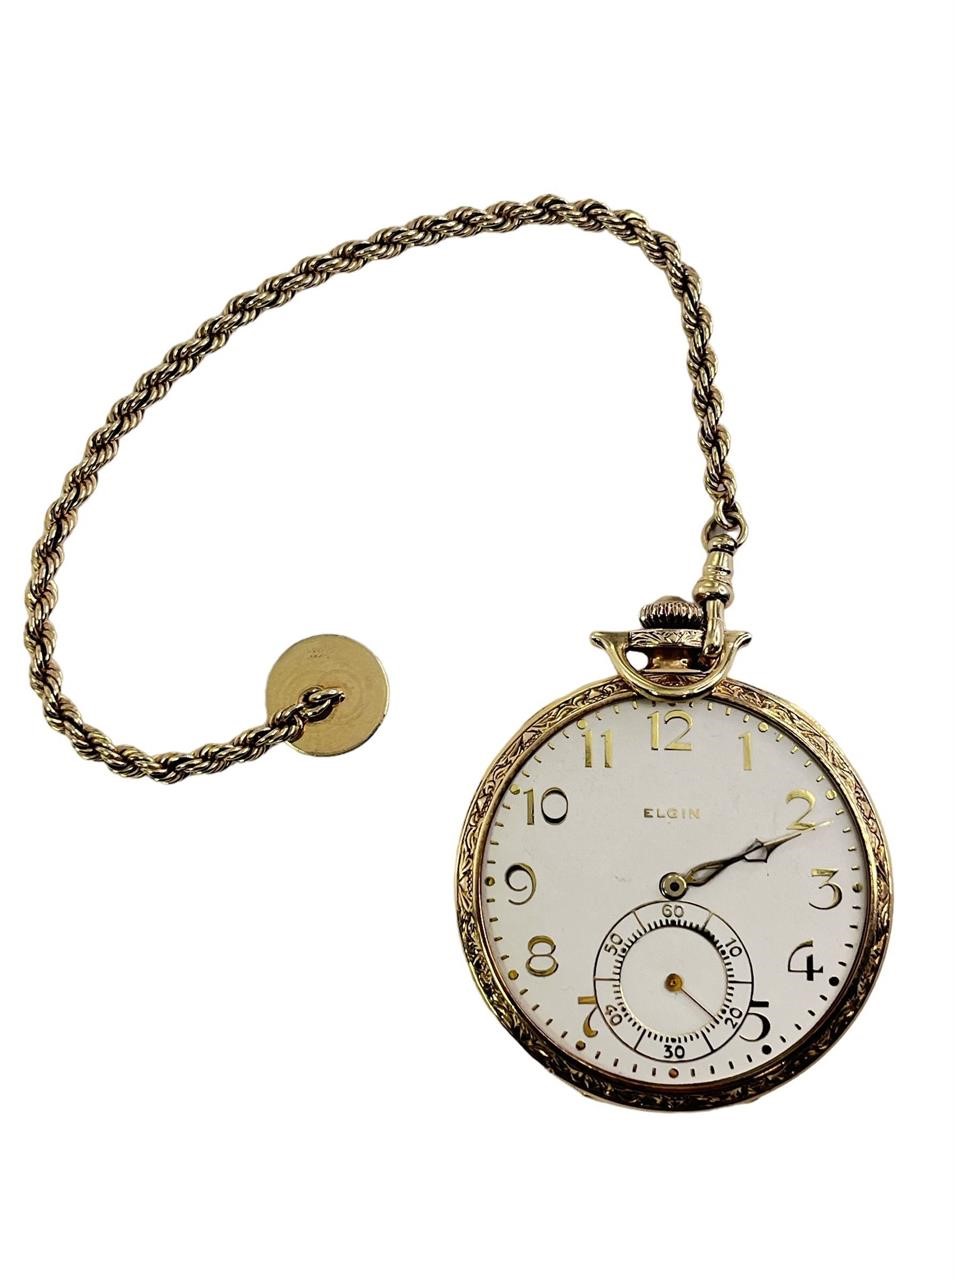 Vintage 14k Gold LORD ELGIN Pocket Watch